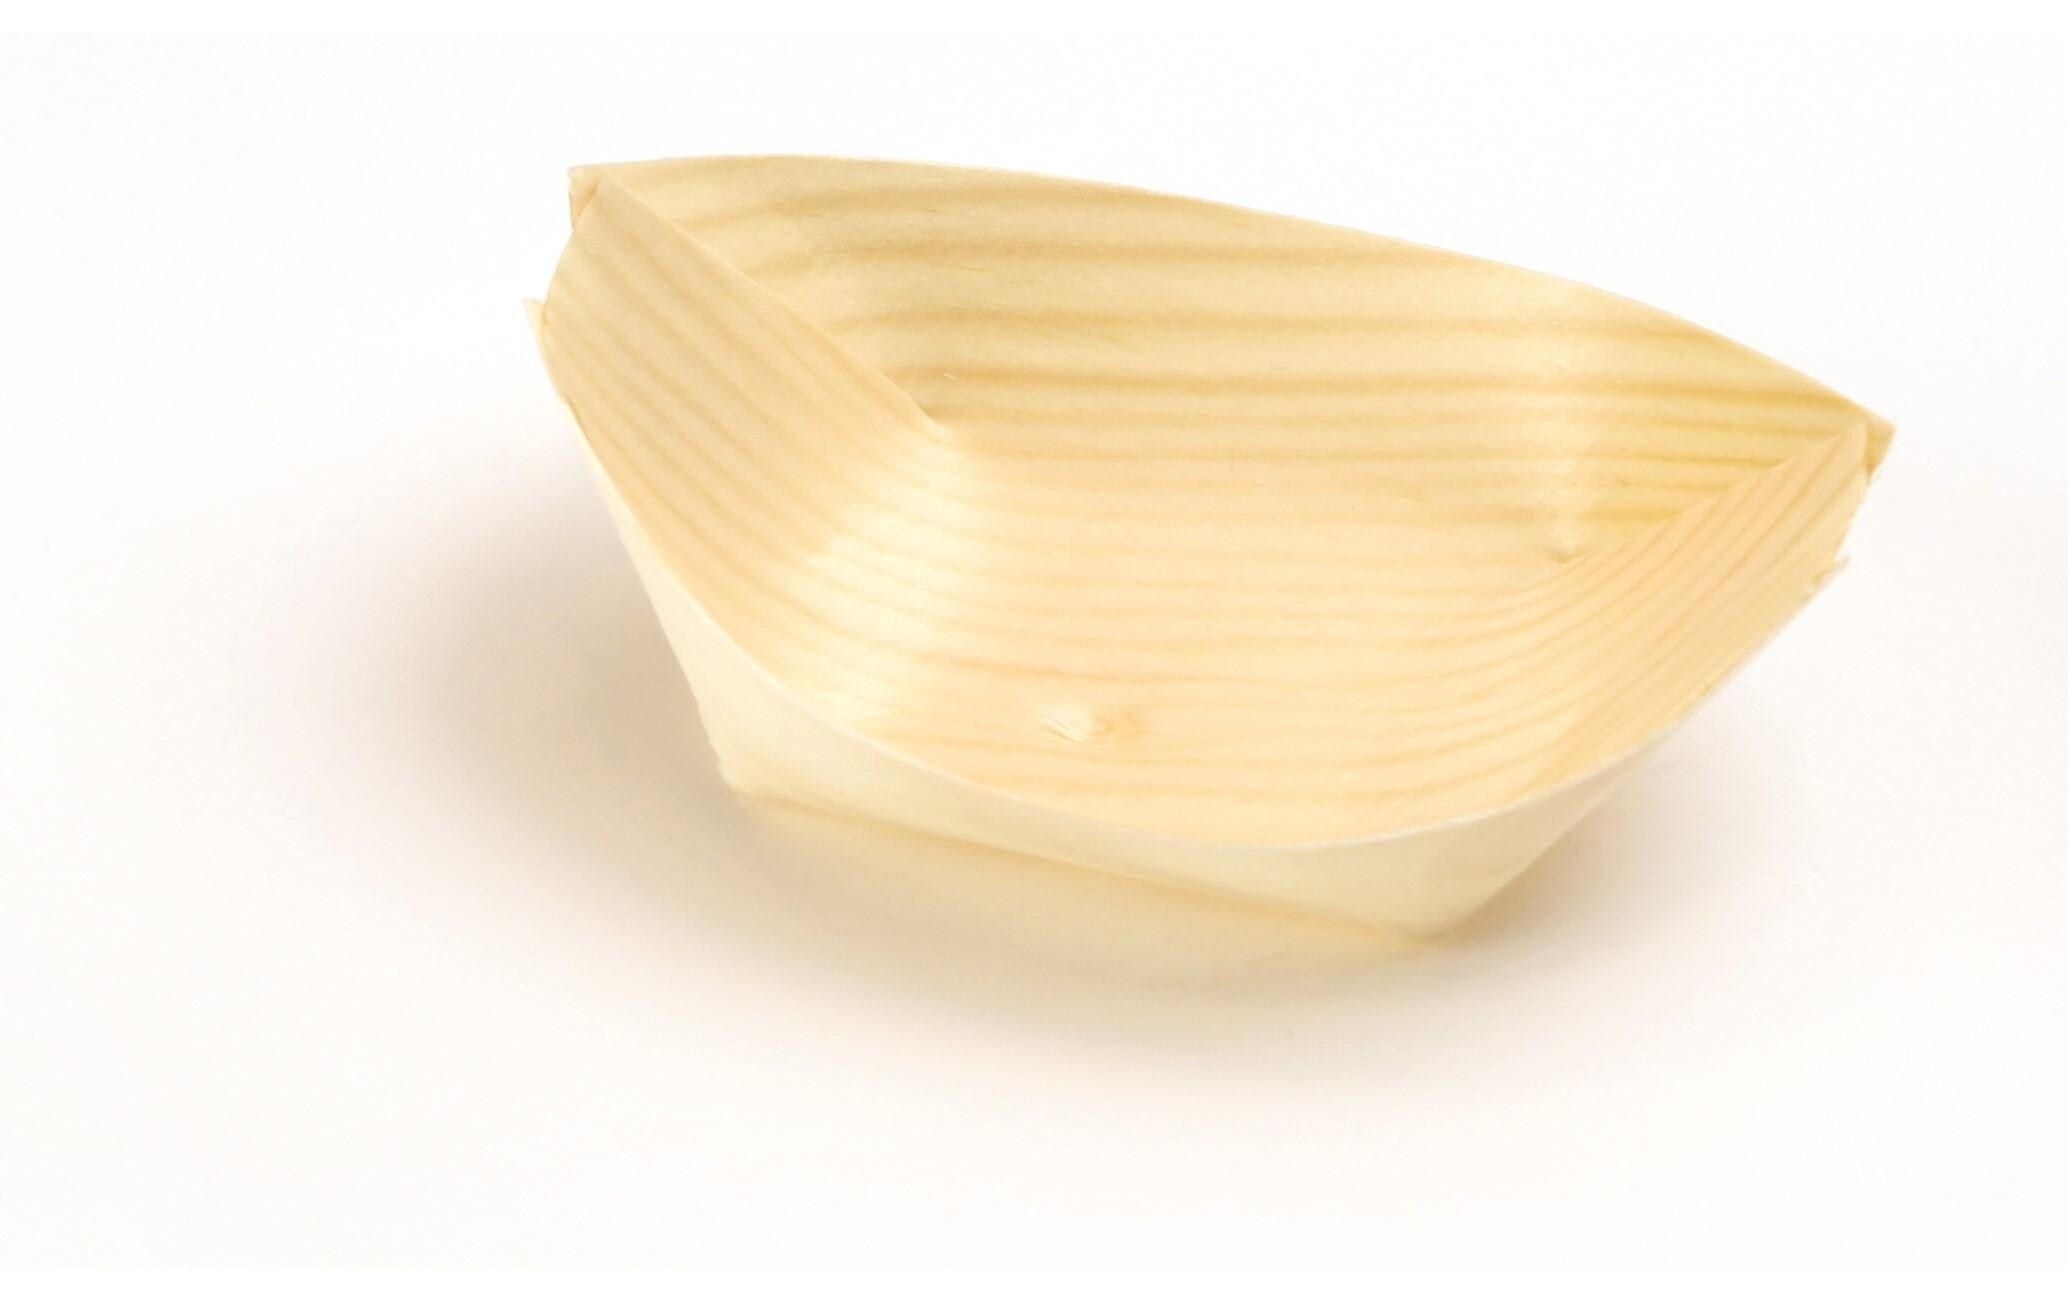 Sier Fingerfood-Schalen Holzboot 4.5 x 8 cm, 100 Stück, Art: Fingerfood-Schalen, Farbe: Hellbraun, Material: FSC®-Holz, Biologisch abbaubar: Ja, Verpackungseinheit: 100 Stück, Motto: Universal